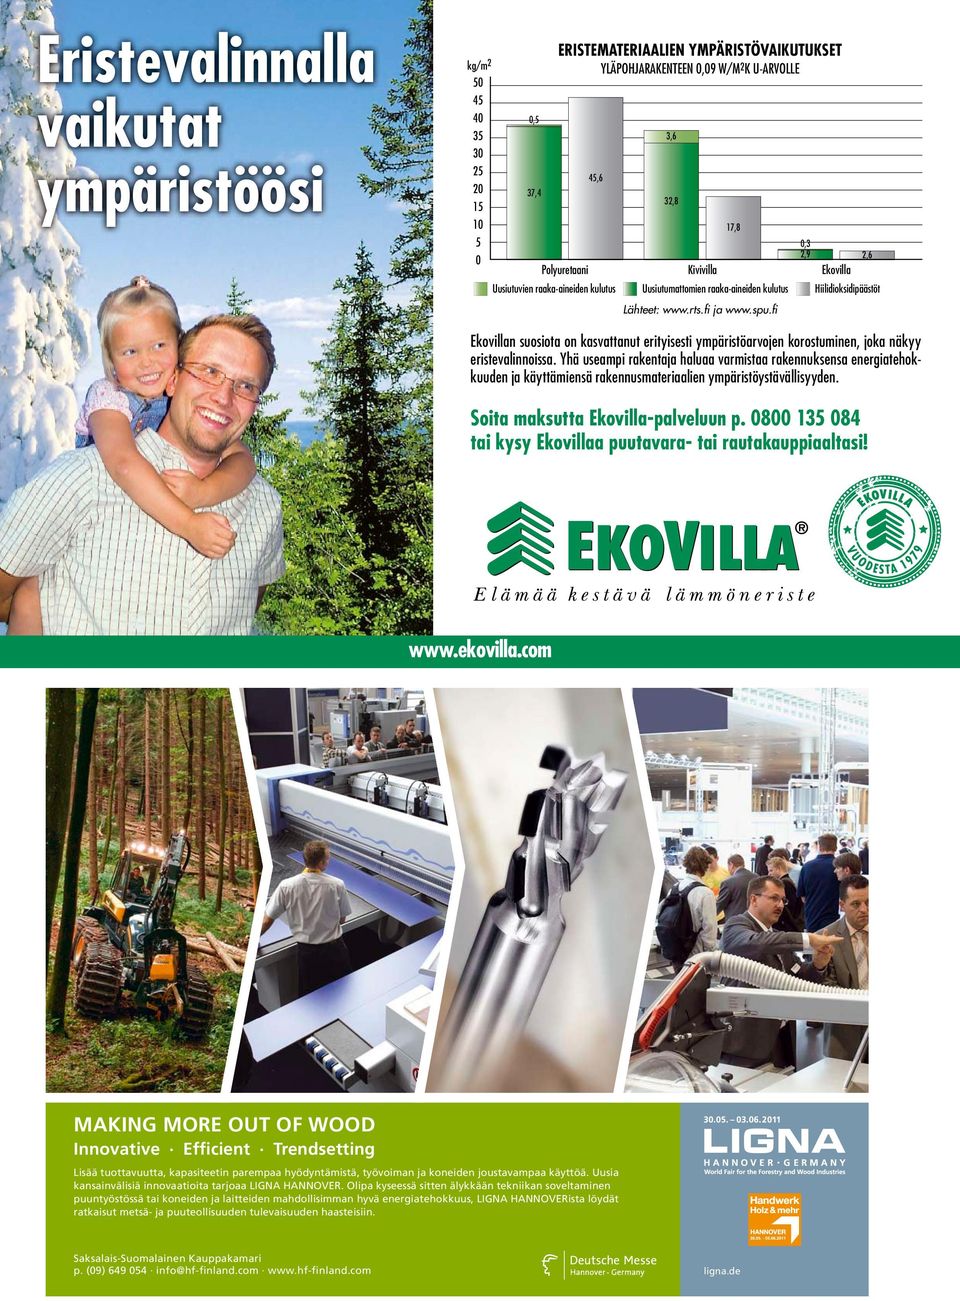 fi Ekovillan suosiota on kasvattanut erityisesti ympäristöarvojen korostuminen, joka näkyy eristevalinnoissa.